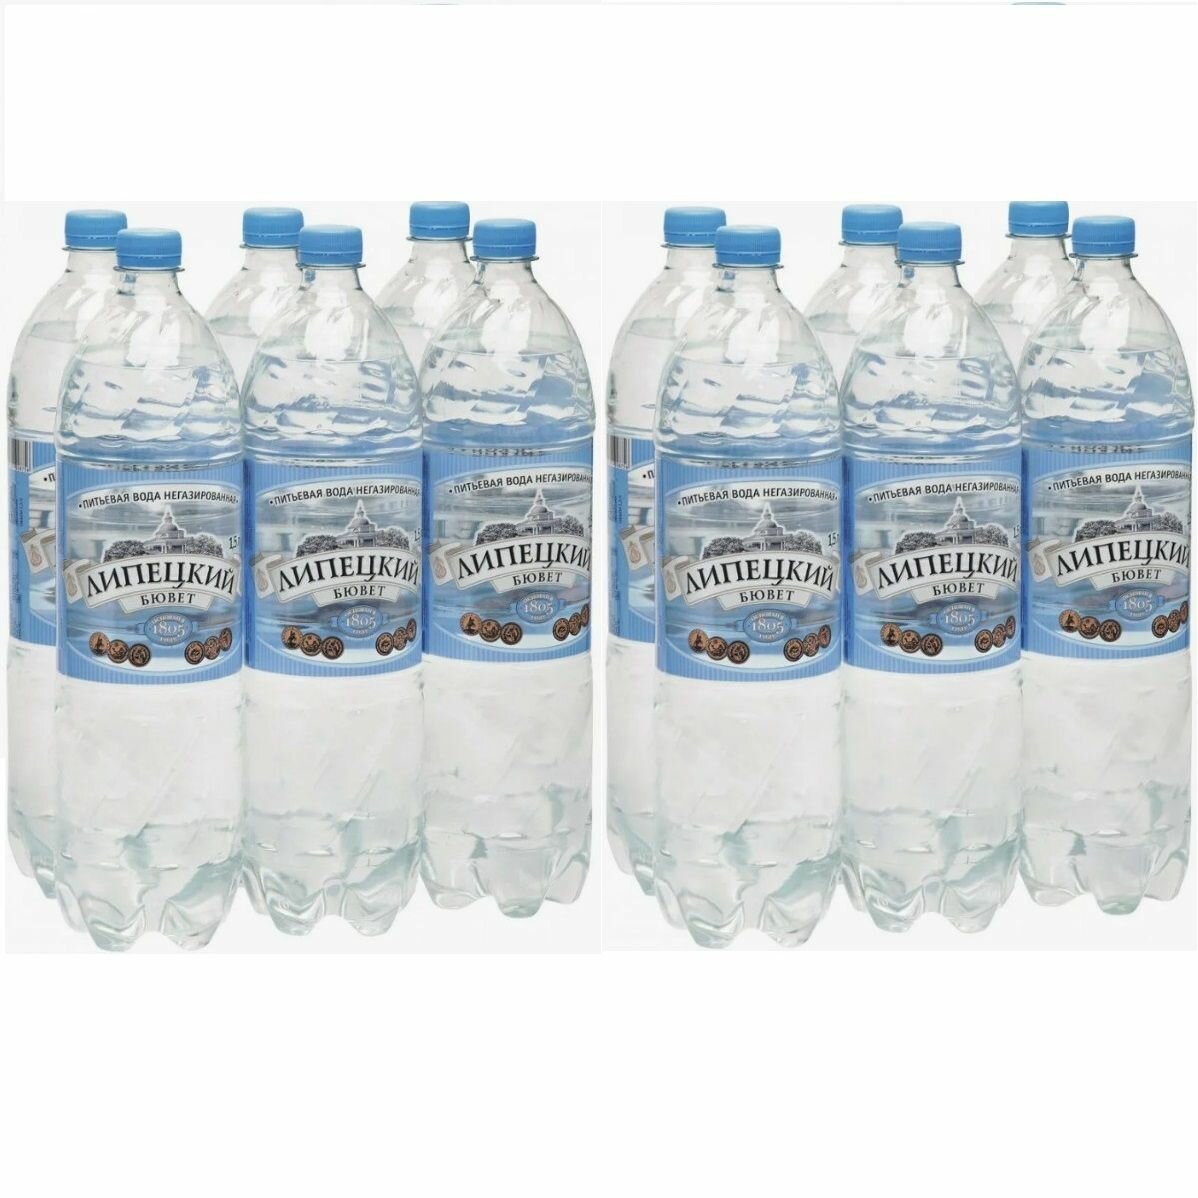 Липецкий Бювет 1,5л*6 шт, негазированная вода - 2 упаковки